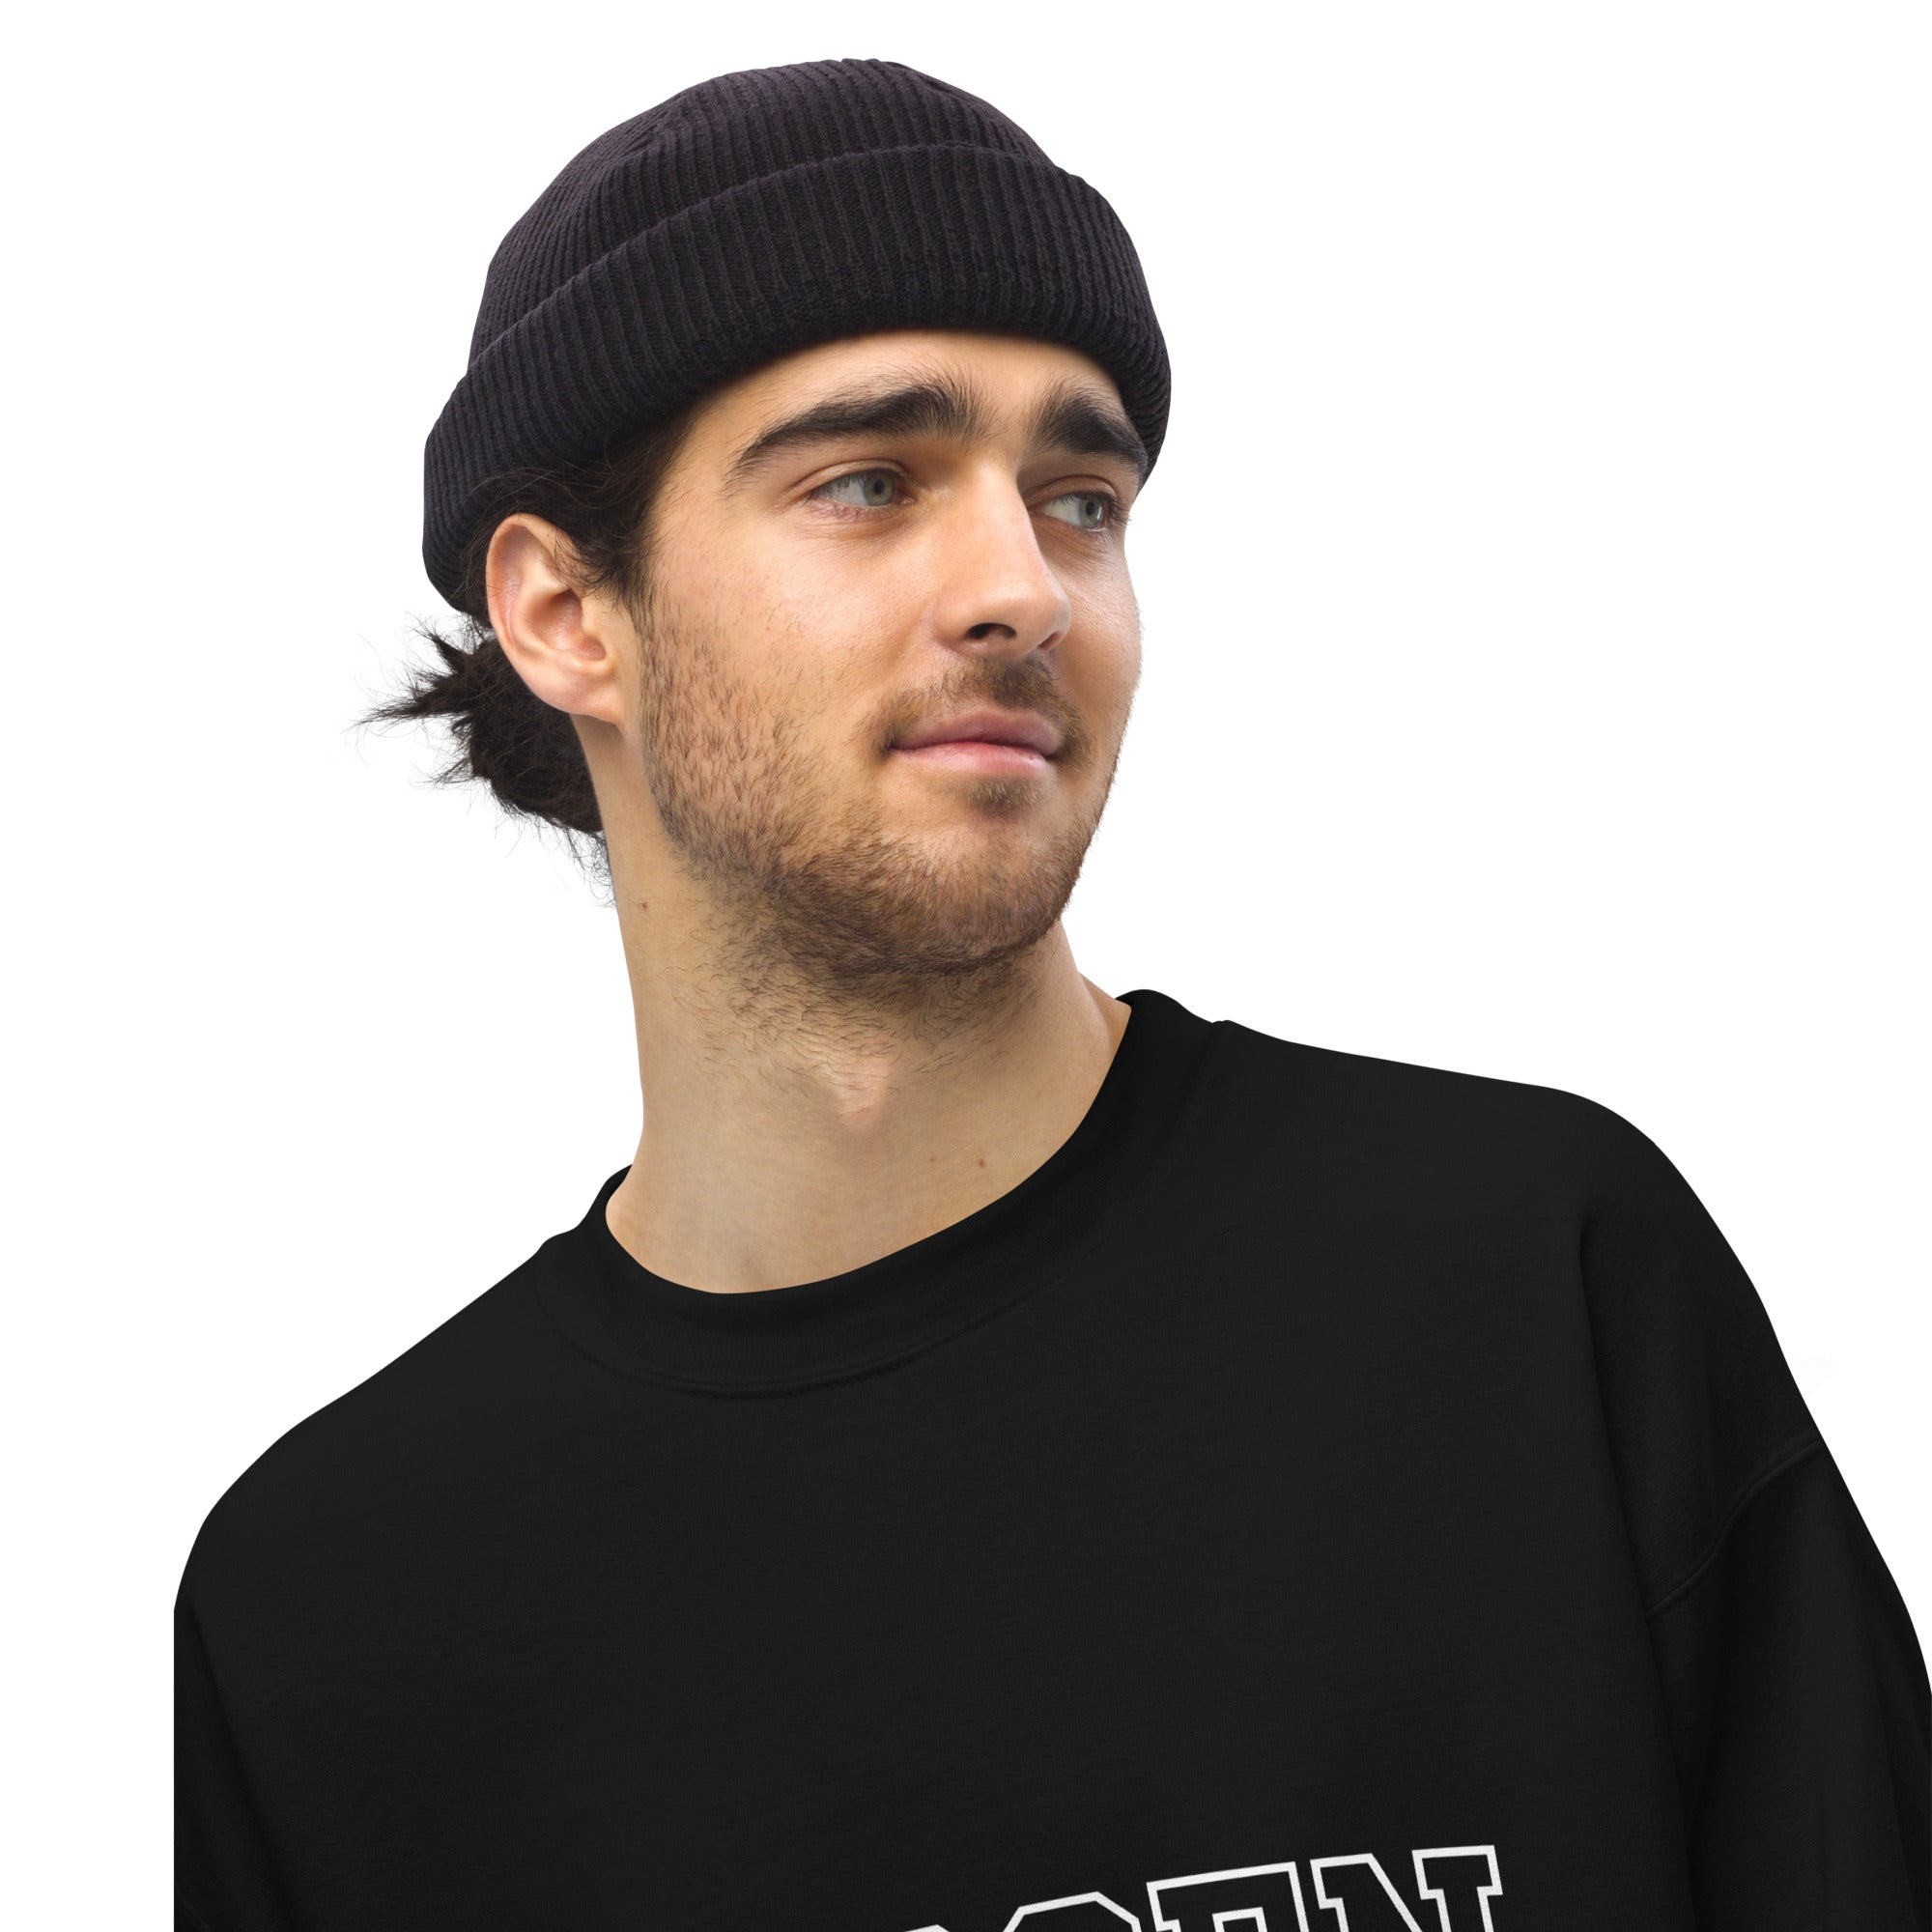 Chosen  | Unisex Sweatshirt | Crew Neck